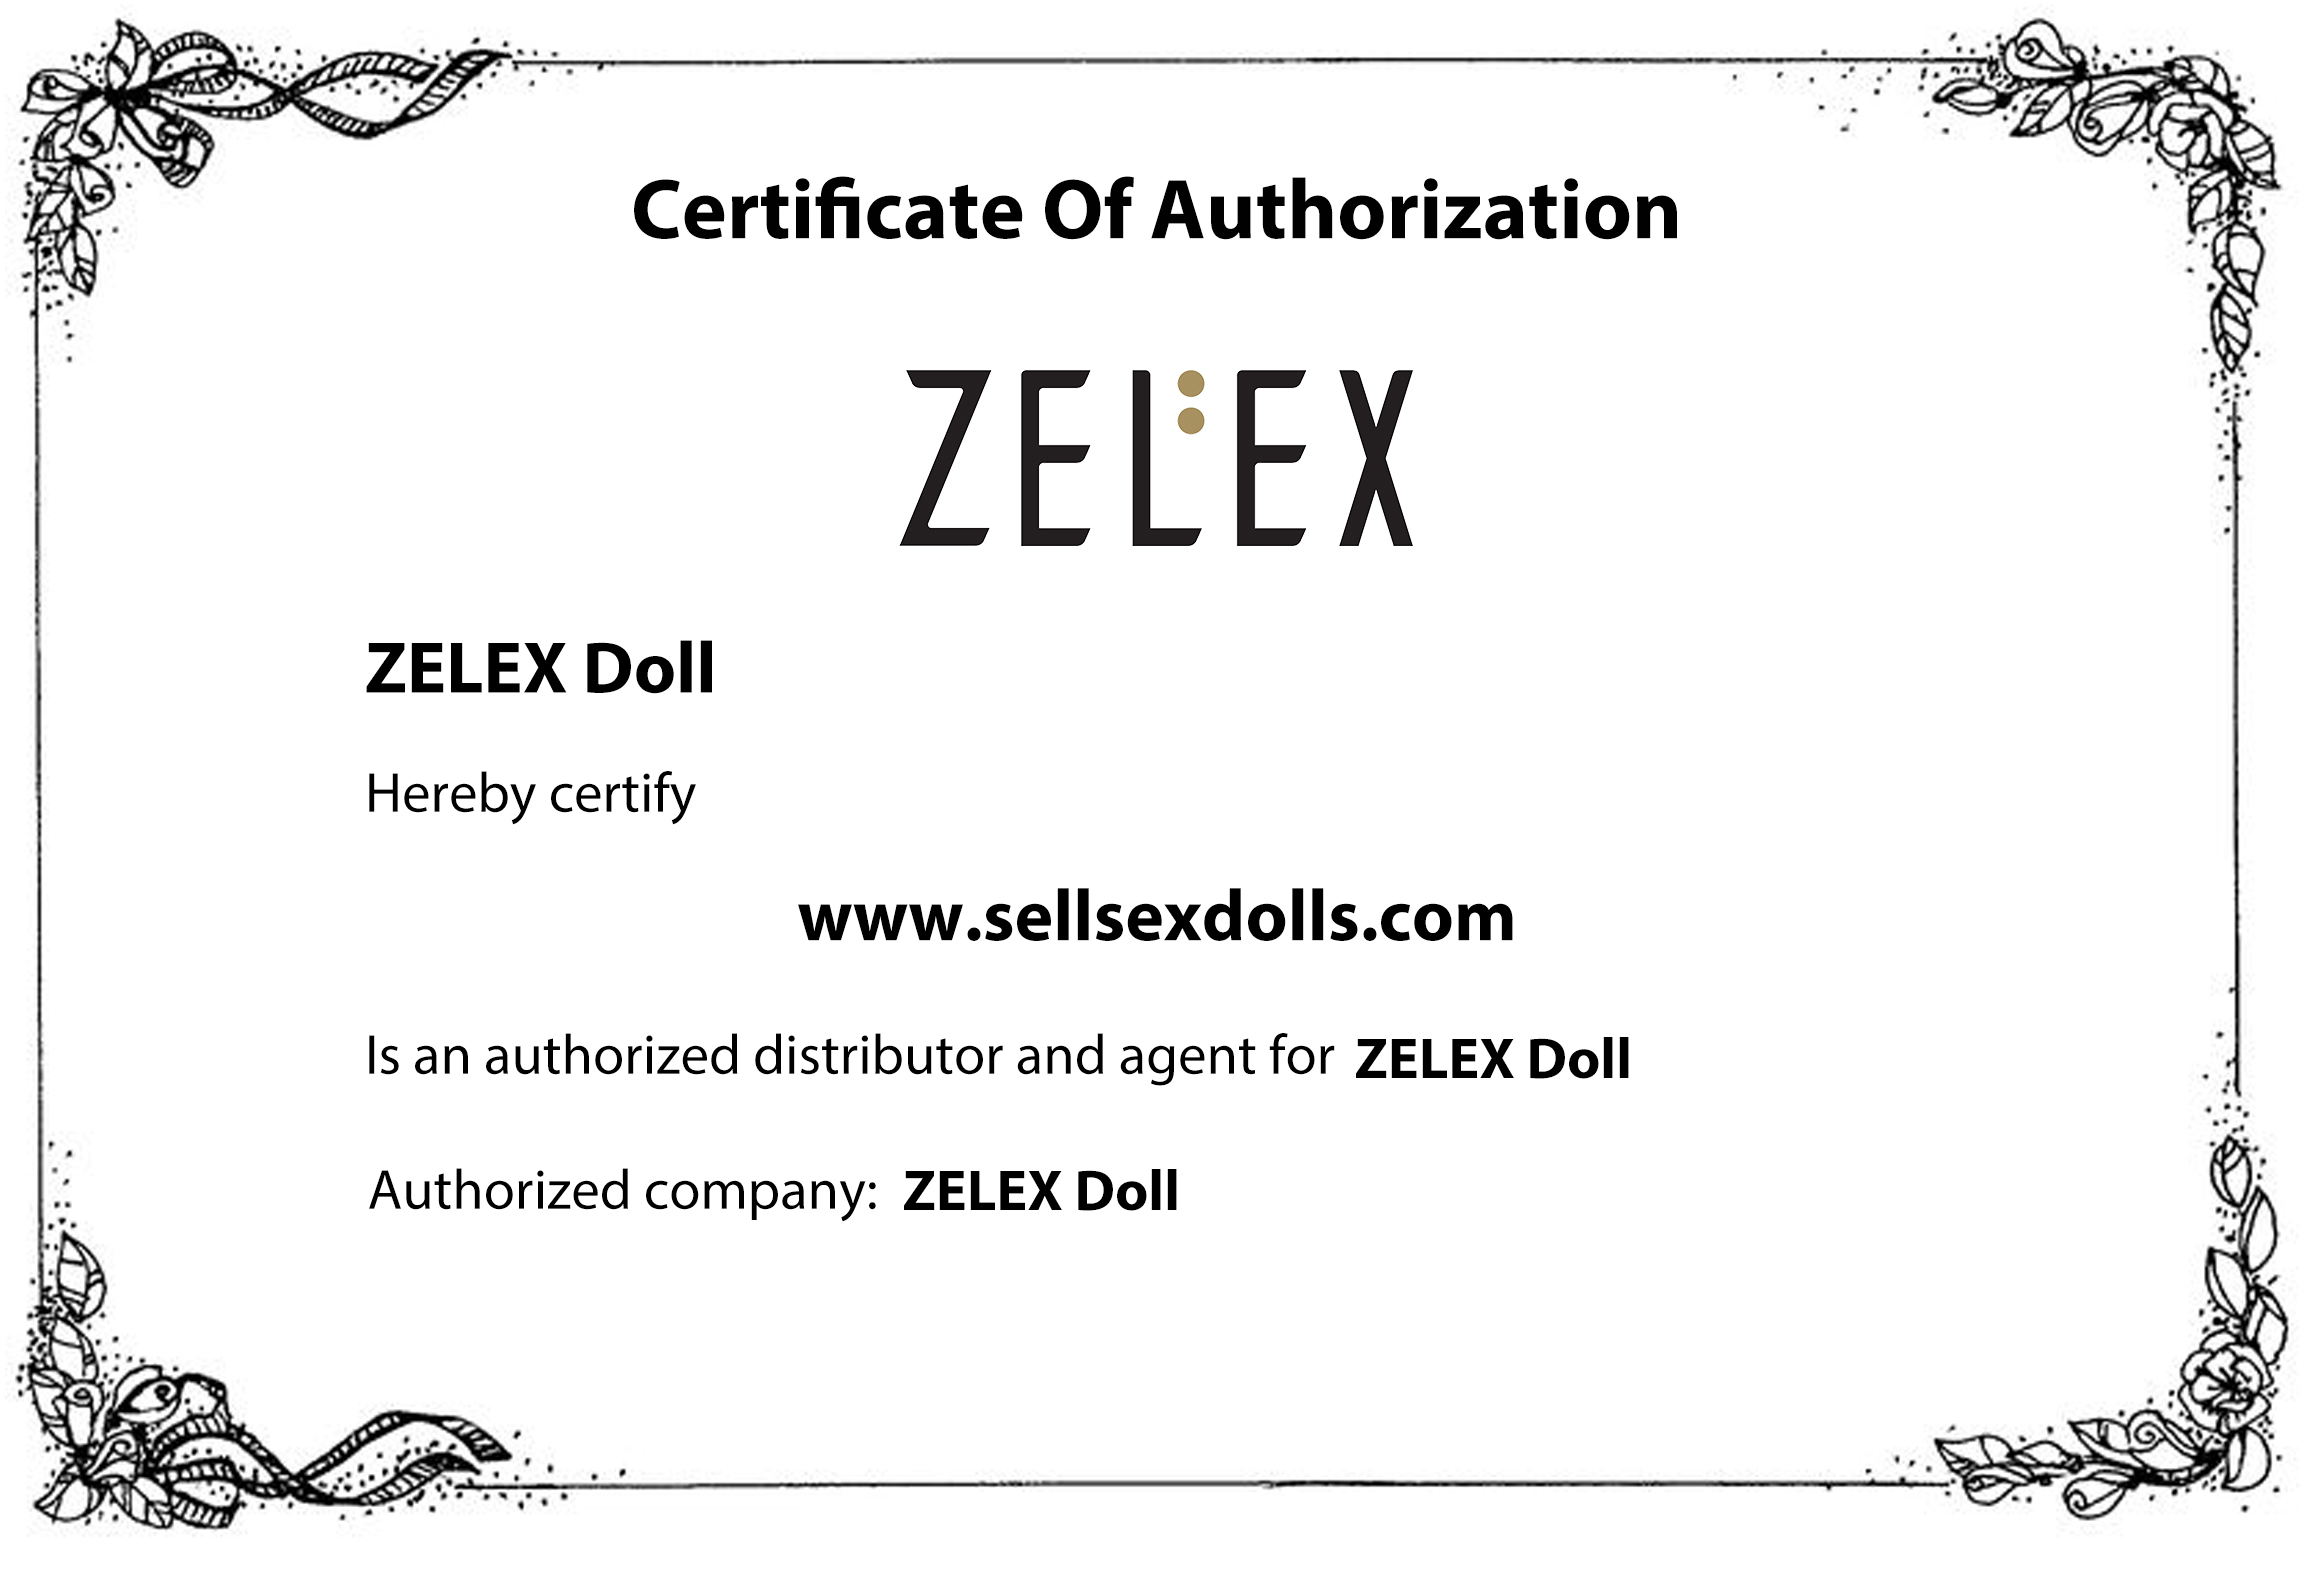 zelex doll certificate